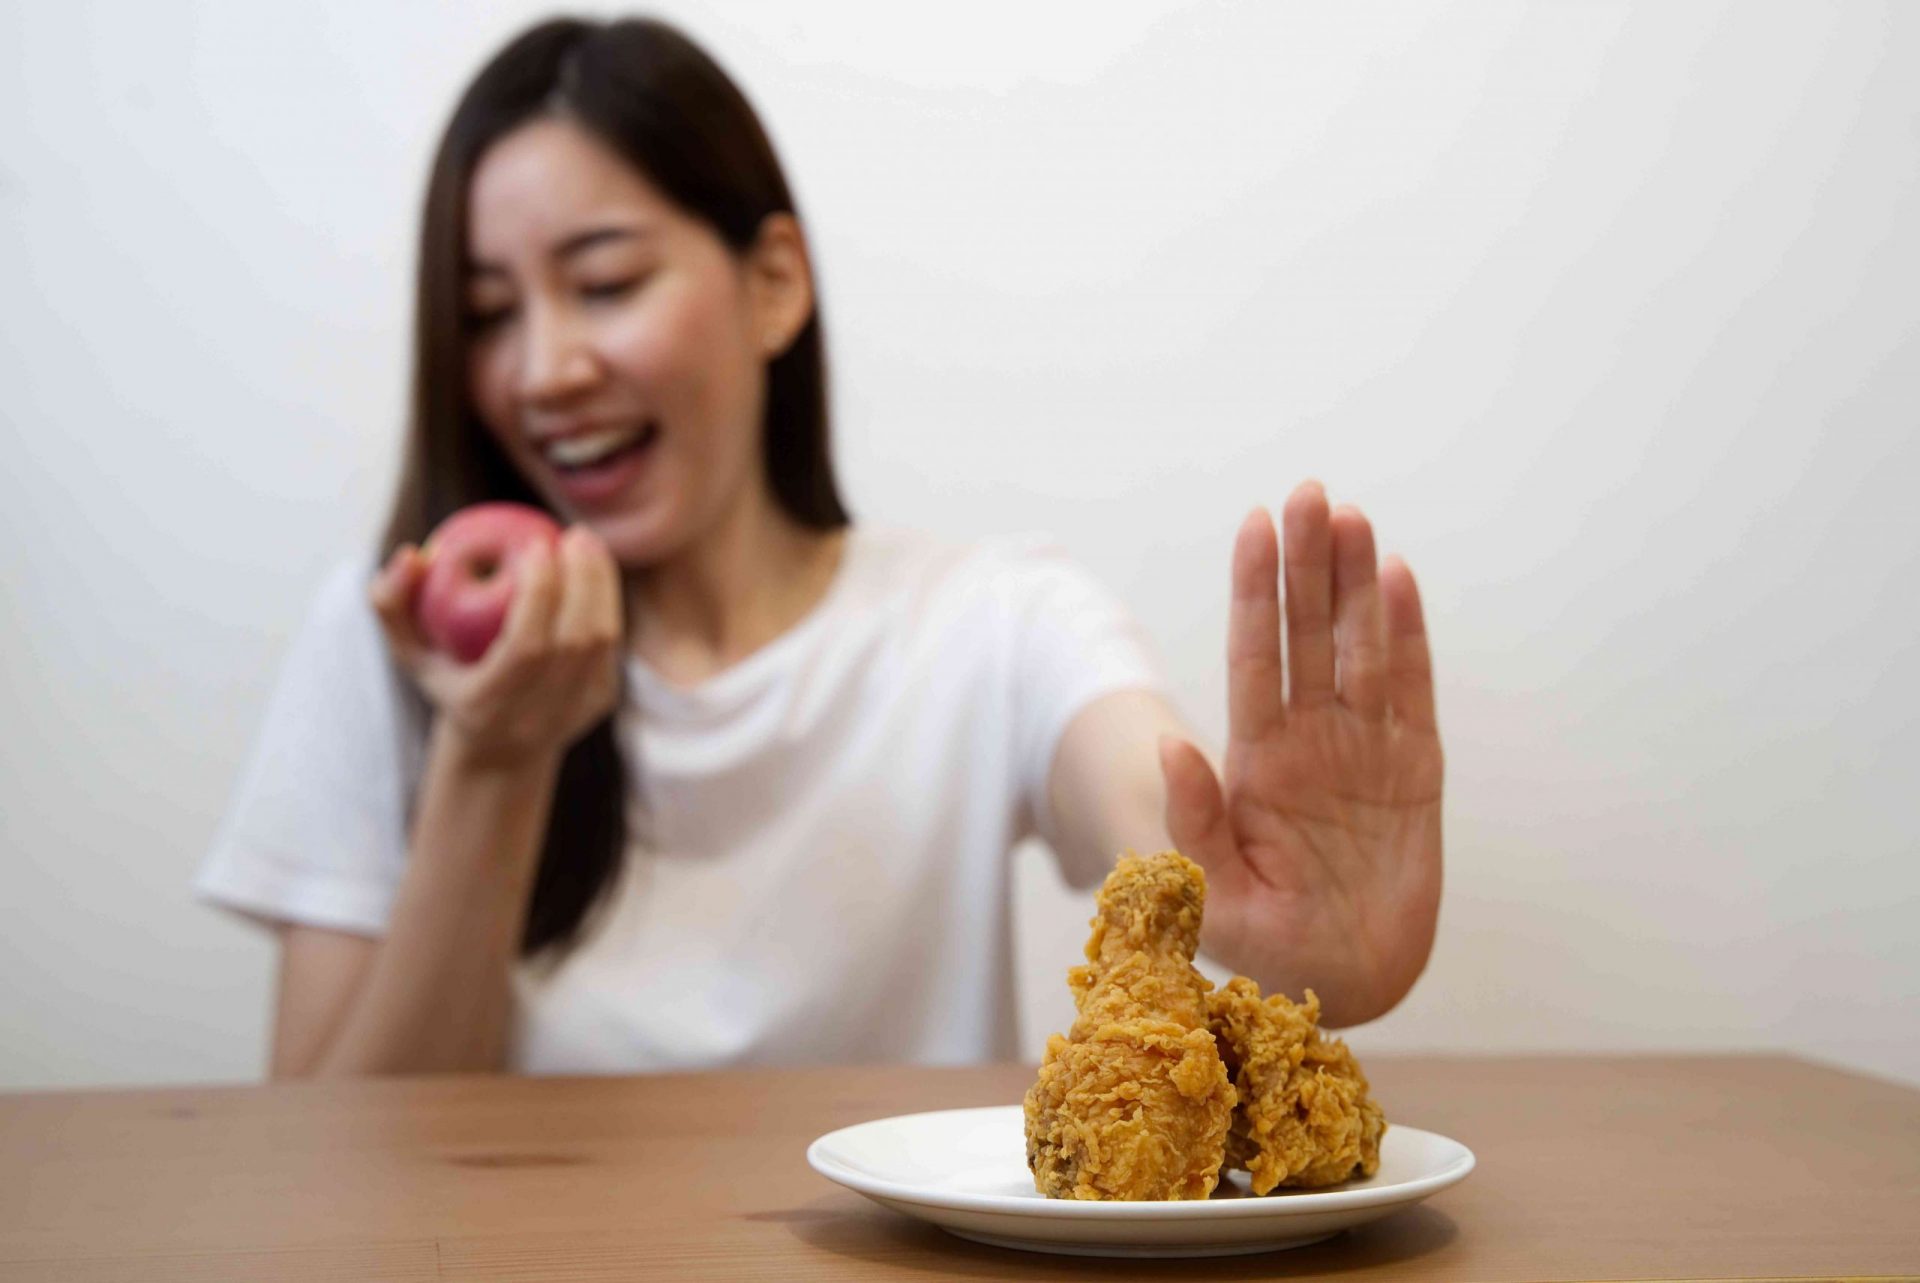 Chica joven a dieta por concepto de buena salud. Primer plano de una mujer que rechaza la comida basura empujando su pollo frito favorito y elige manzana roja y ensalada para gozar de buena salud.